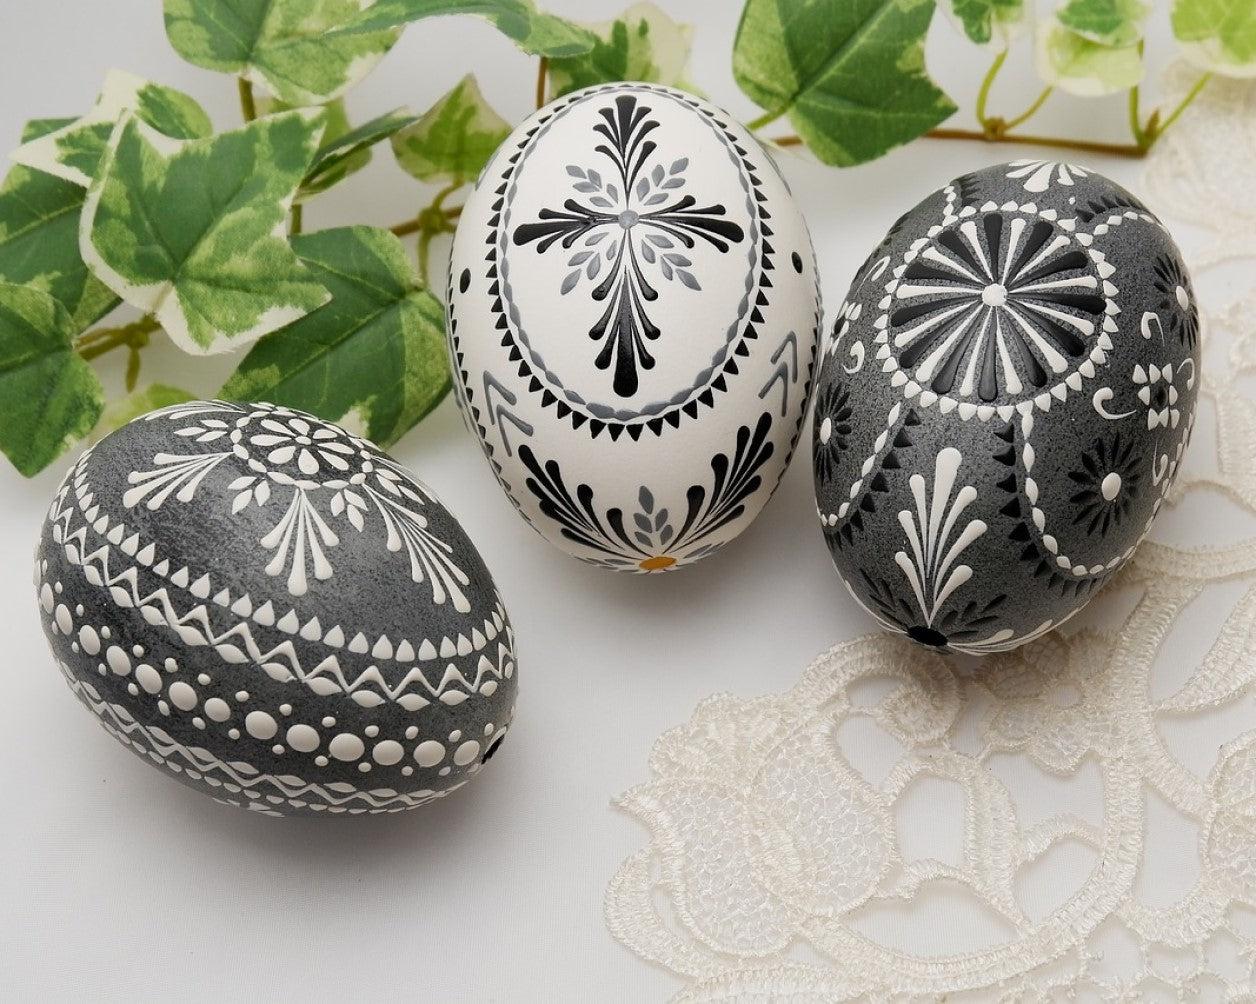 Miért a nyúl tojja a tojást húsvétkor?